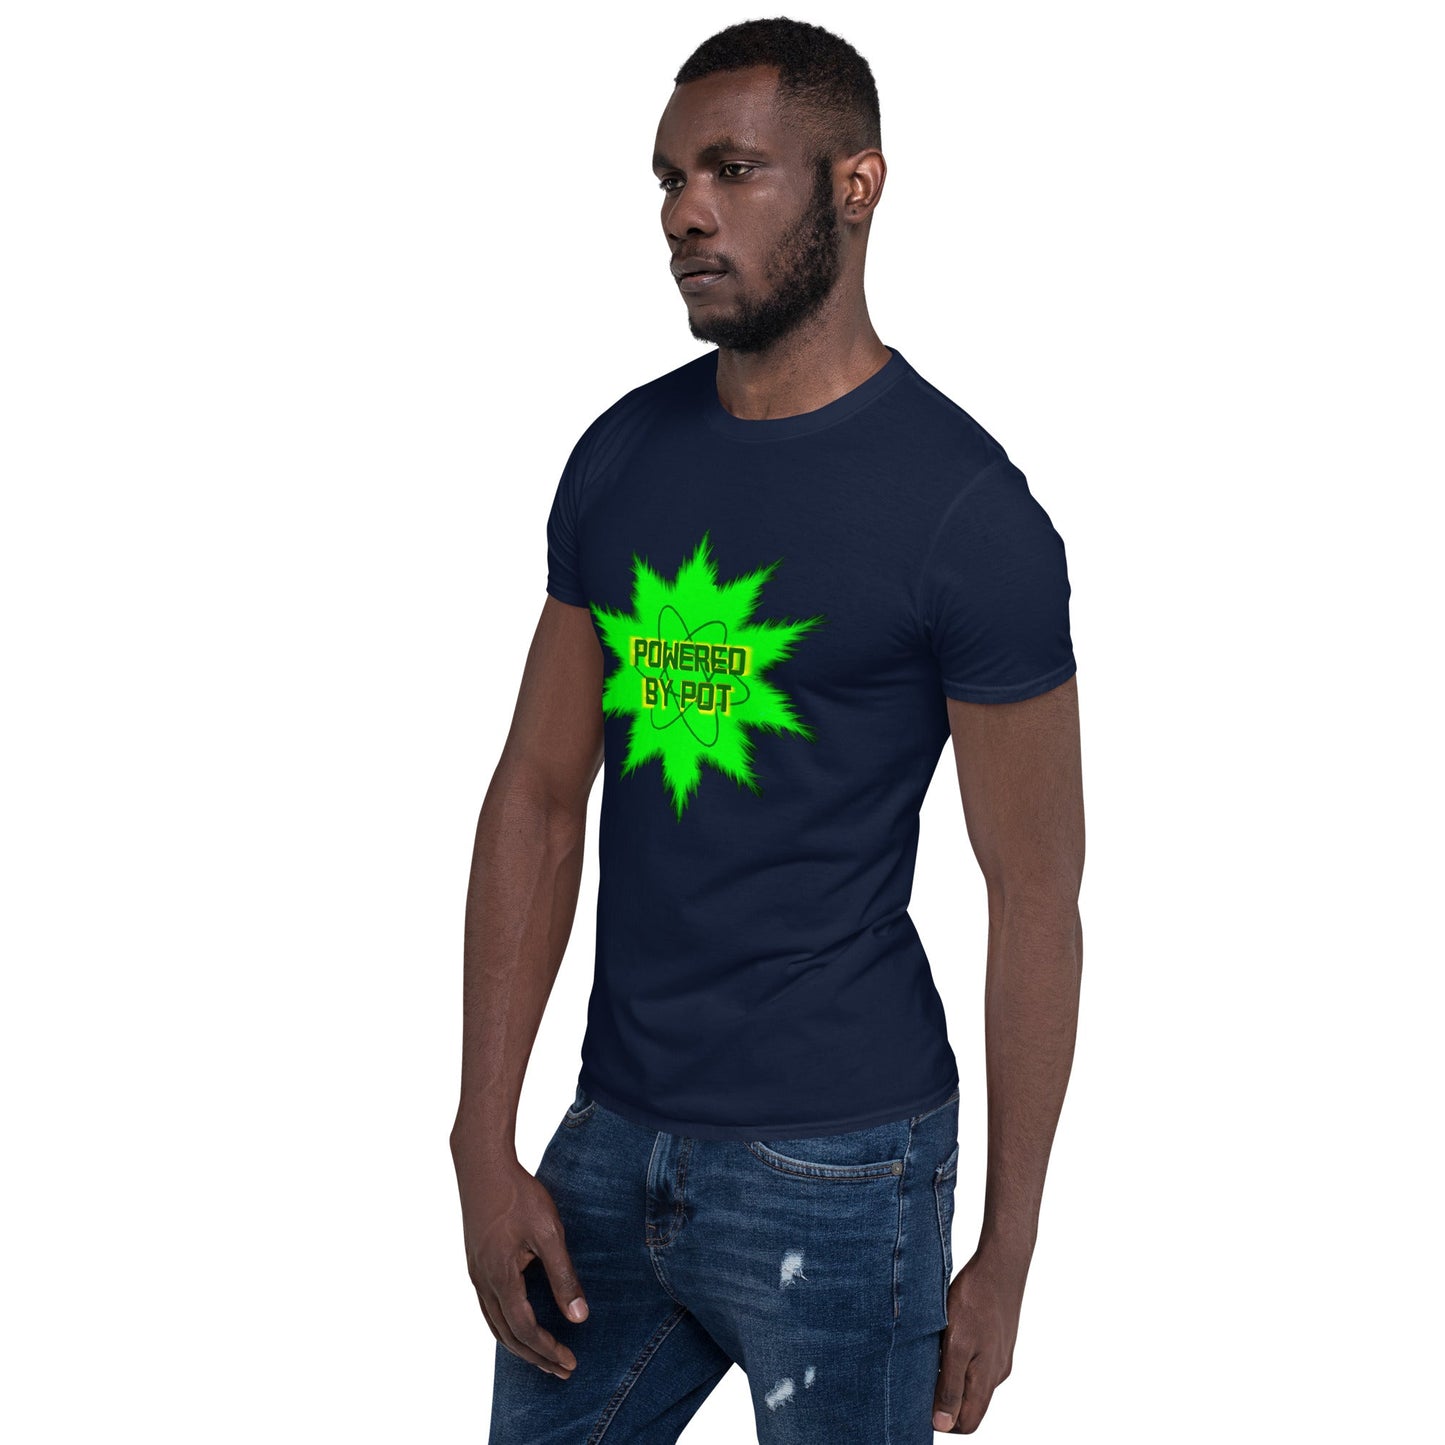 Powered By Pot Short-Sleeve Unisex T-Shirt - Lizard Vigilante